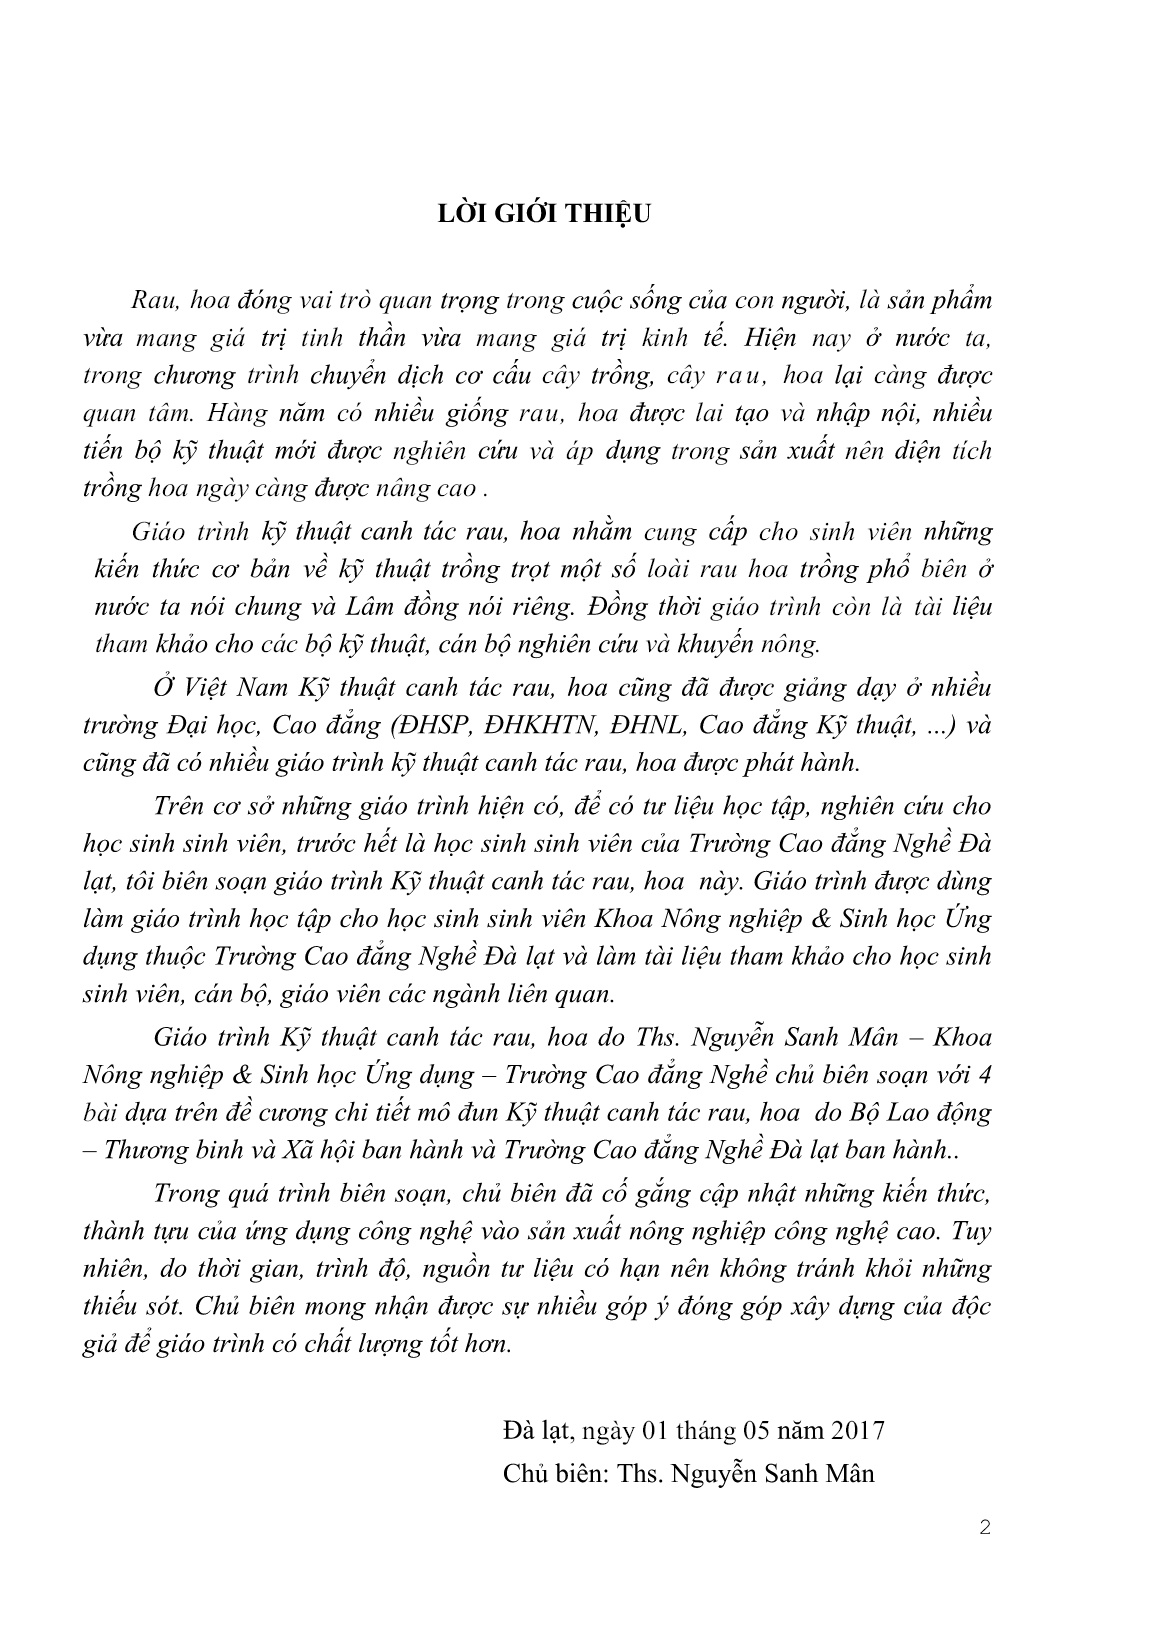 Giáo trình Kỹ thuật canh tác rau, hoa - Phần 1 (Trình độ: Cao đẳng) trang 4